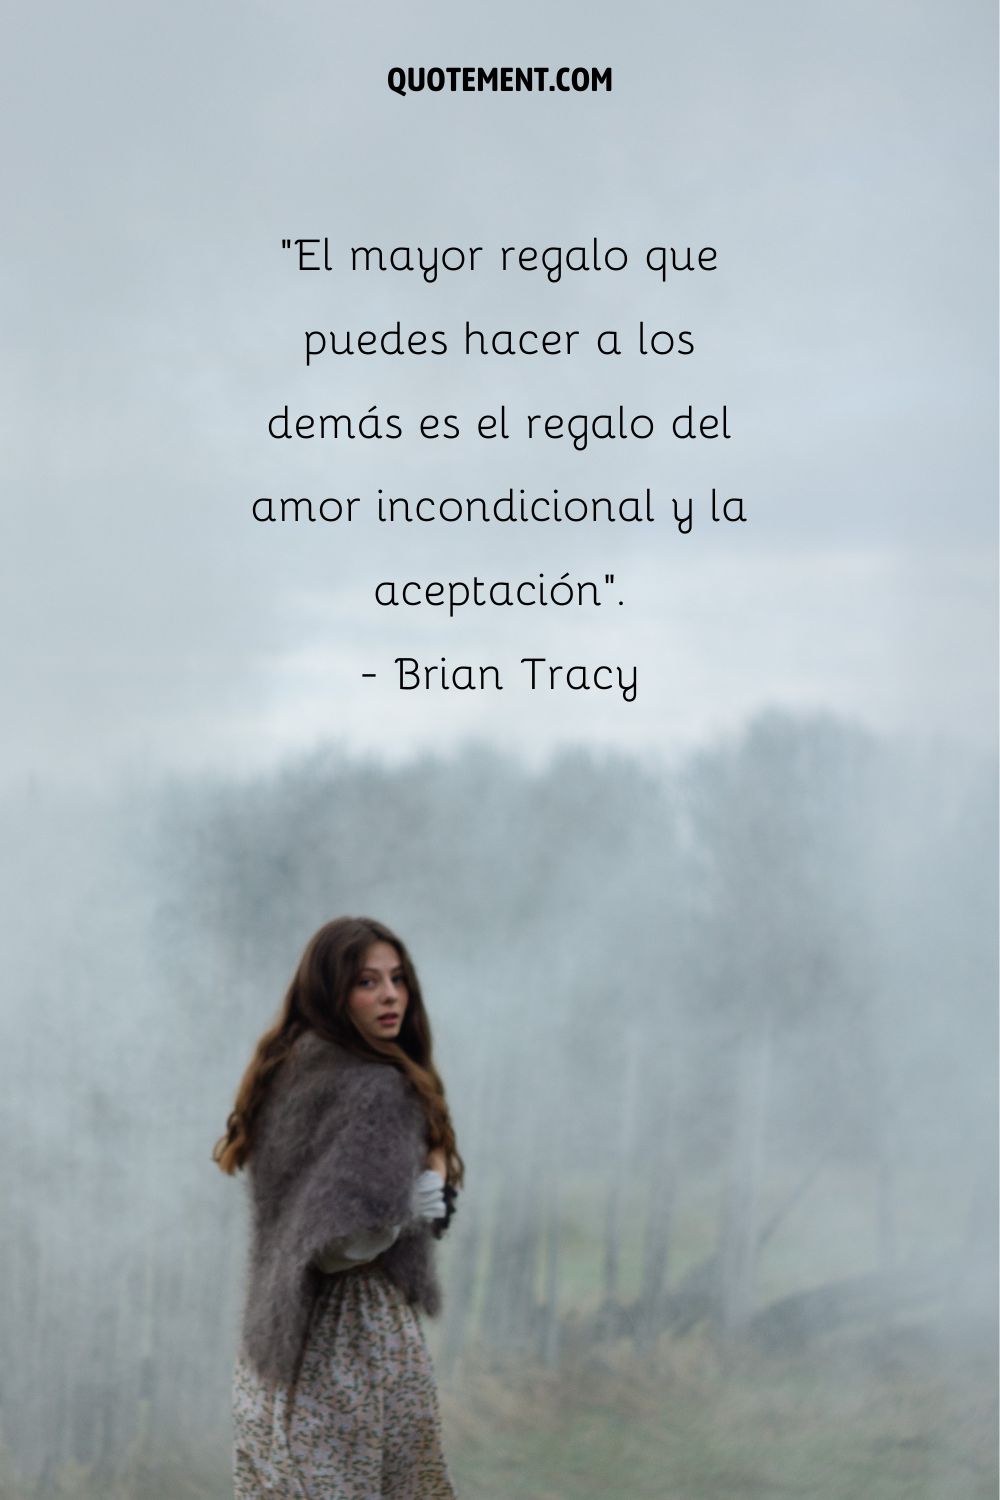 "El mayor regalo que puedes hacer a los demás es el regalo del amor y la aceptación incondicionales". - Brian Tracy